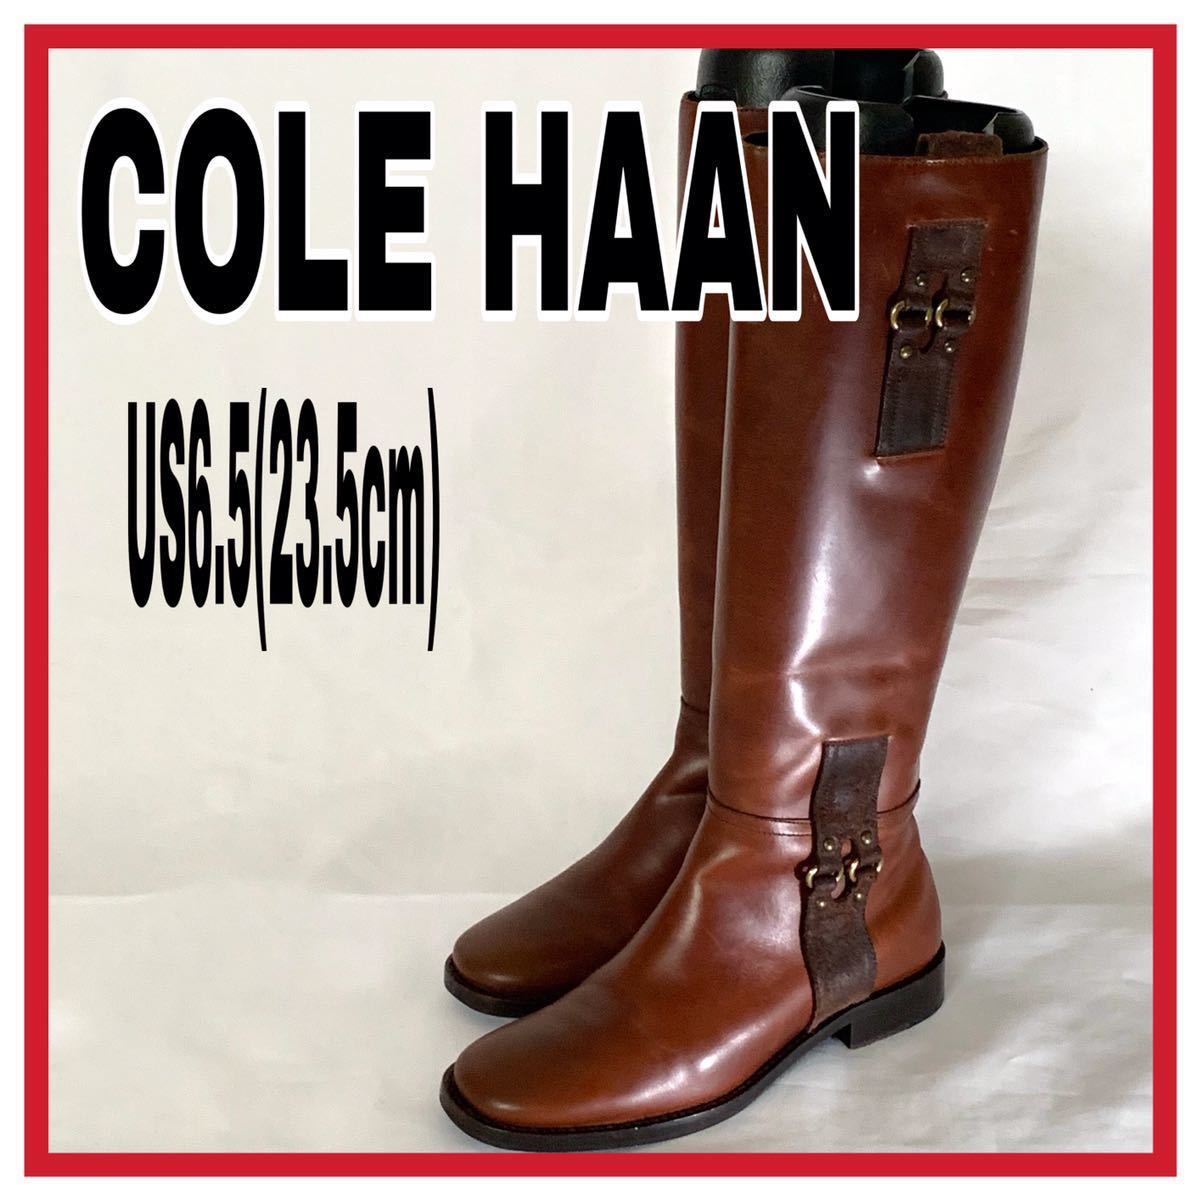 レディース COLE HAAN コールハーン ロングブーツ サイドジップ プレーントゥ レザー ブラウン US6.5 23.5cm 革靴 シューズ